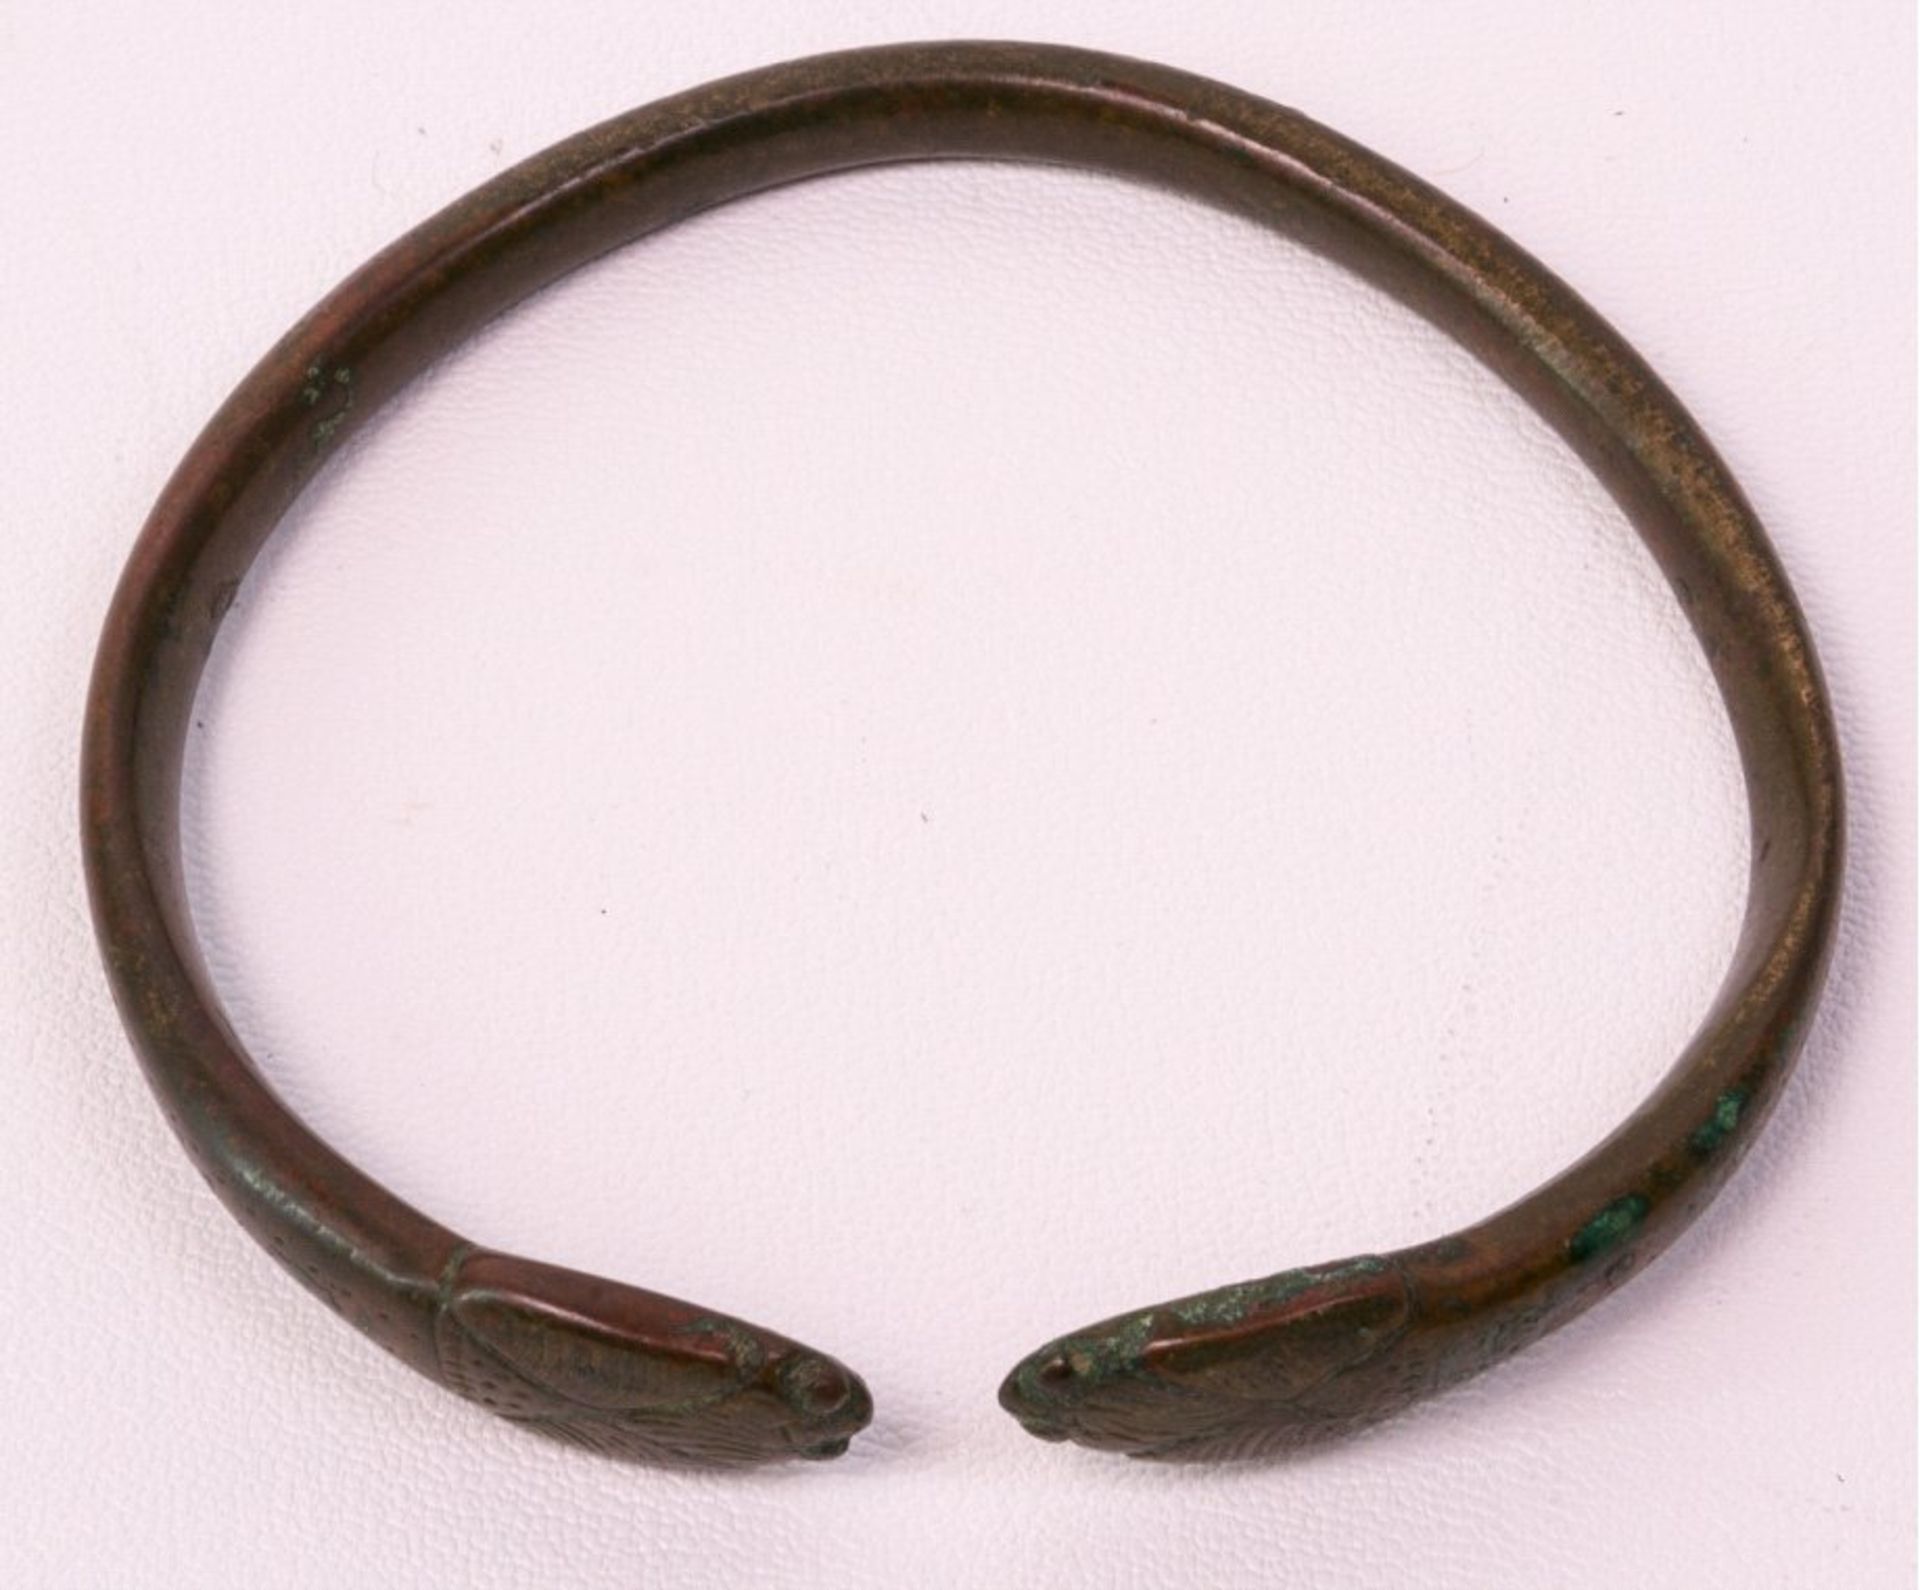 Armreif, Römisch/Keltisch ca. 300 v. Chr.Bronze, verziert mit 2 Kobraköpfen, schöne Patina,